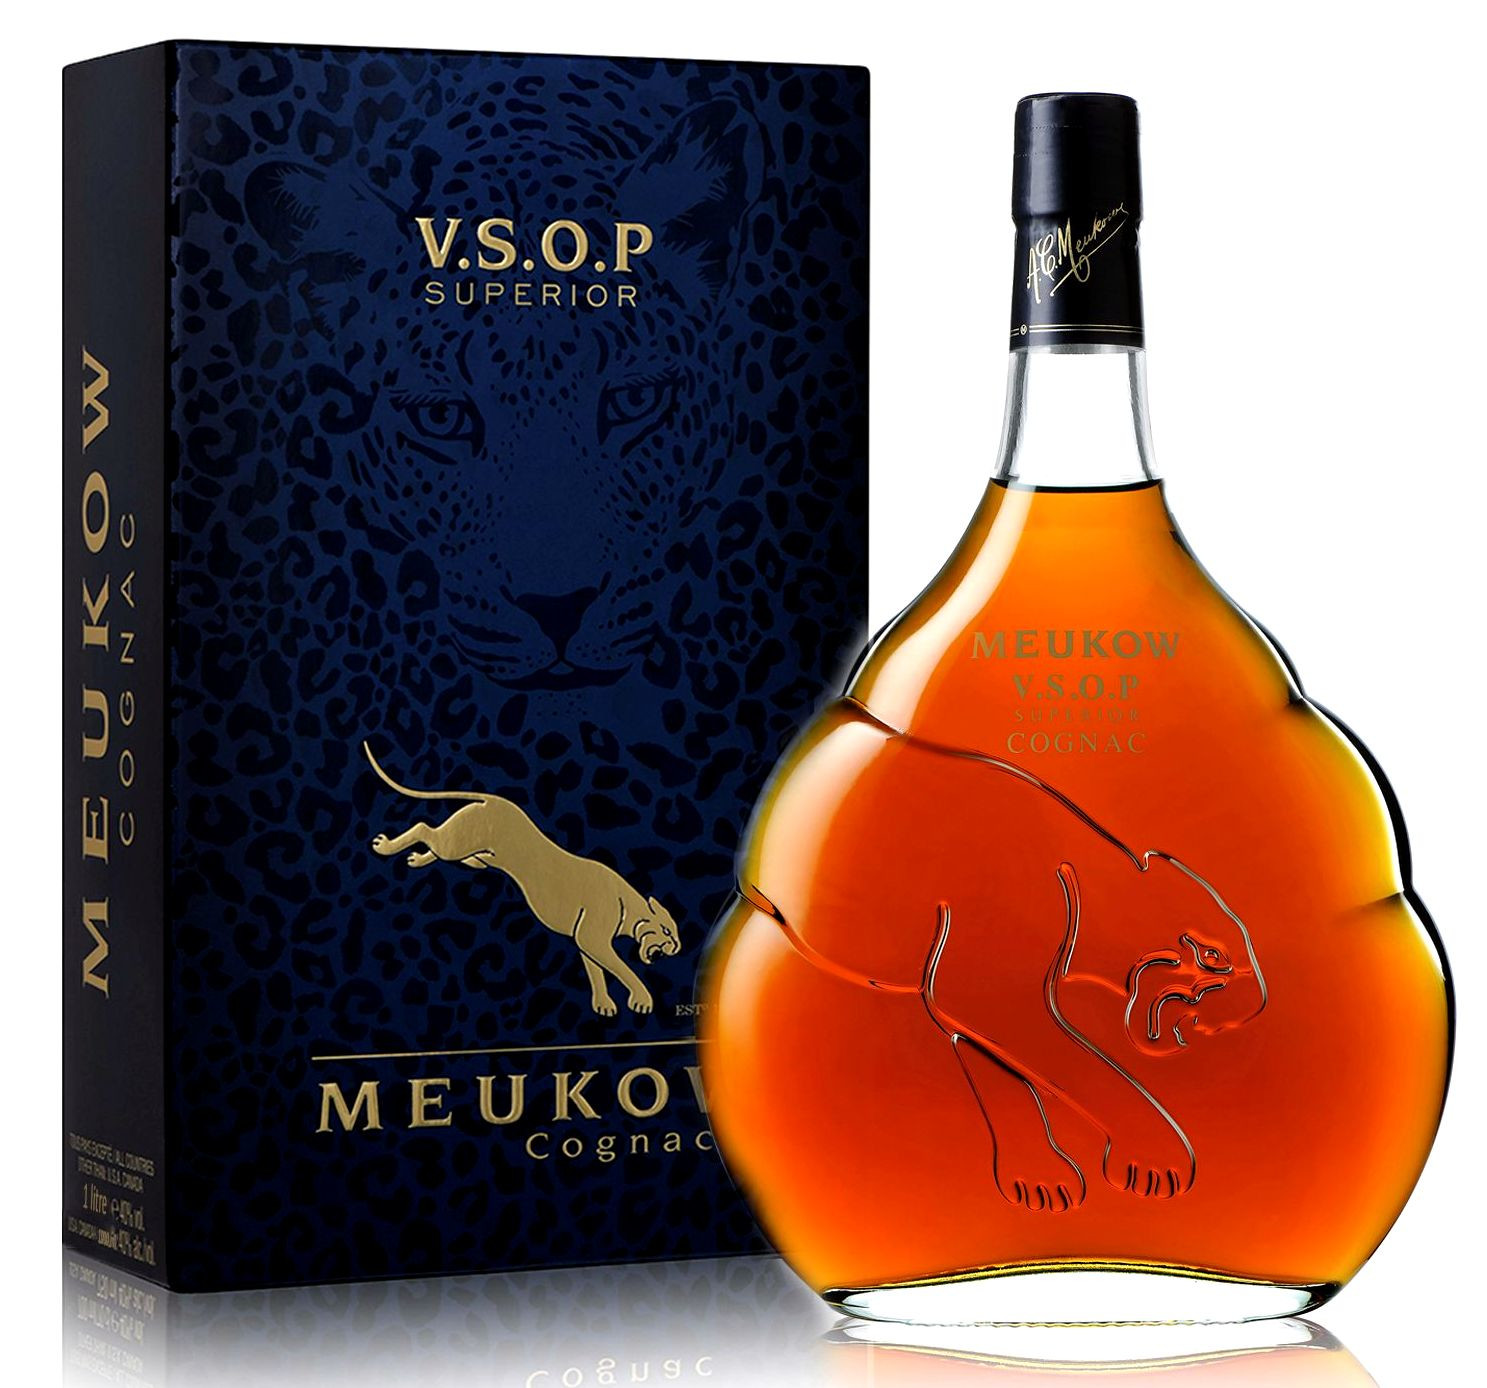 Meukow Cognac VSOP Superior 0,7l